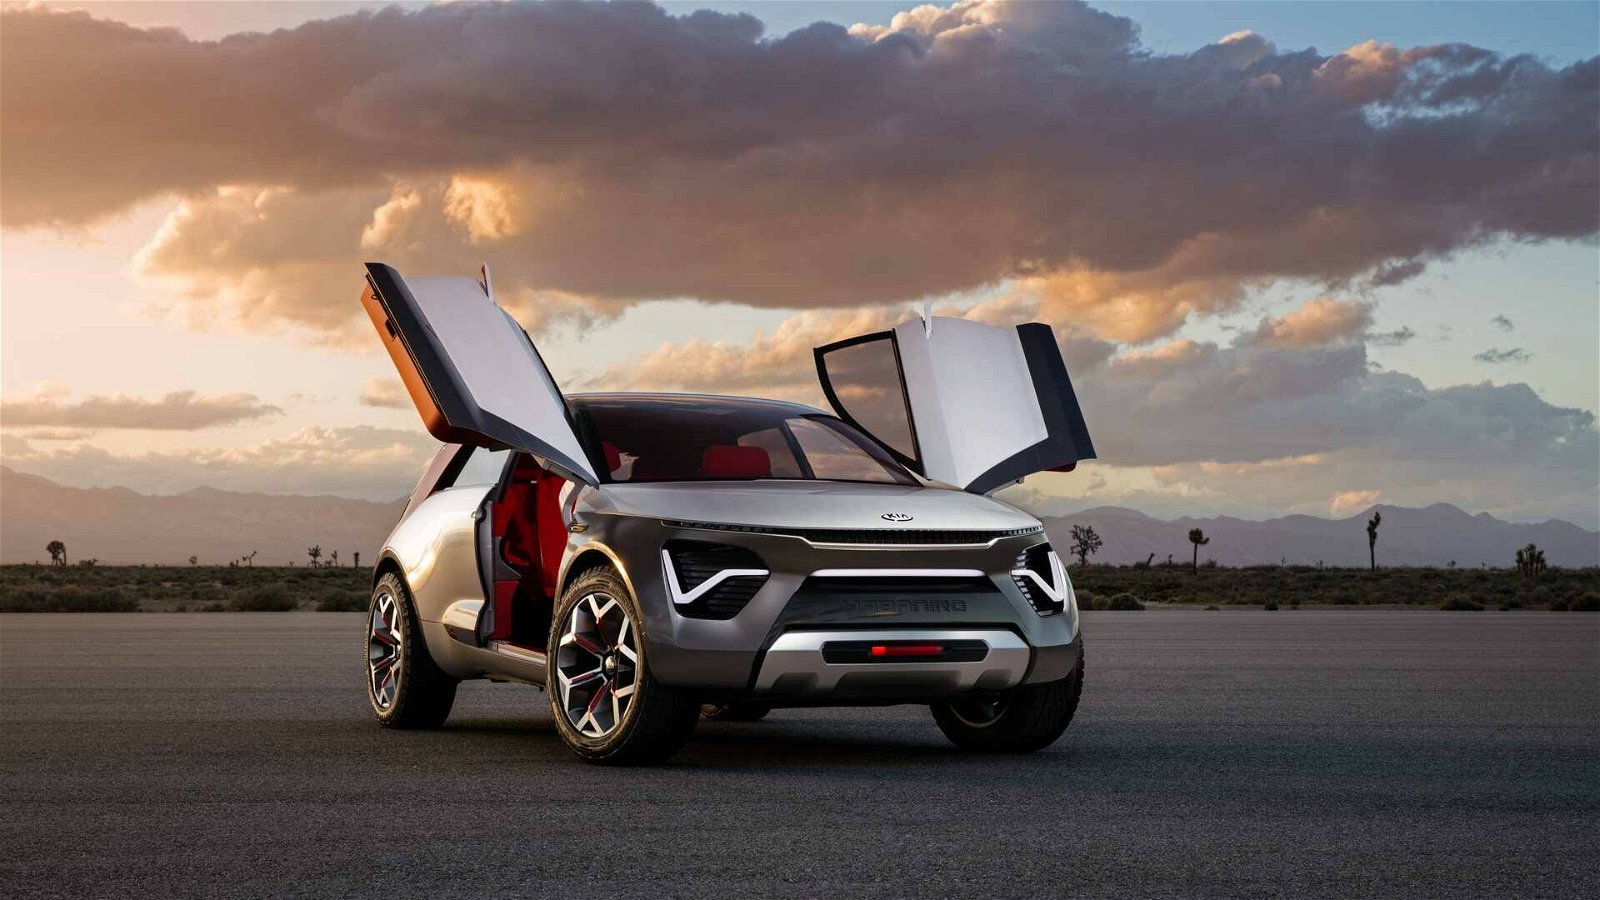 Immagine di Kia Niro 2022 concept: il crossover green dal design futuristico